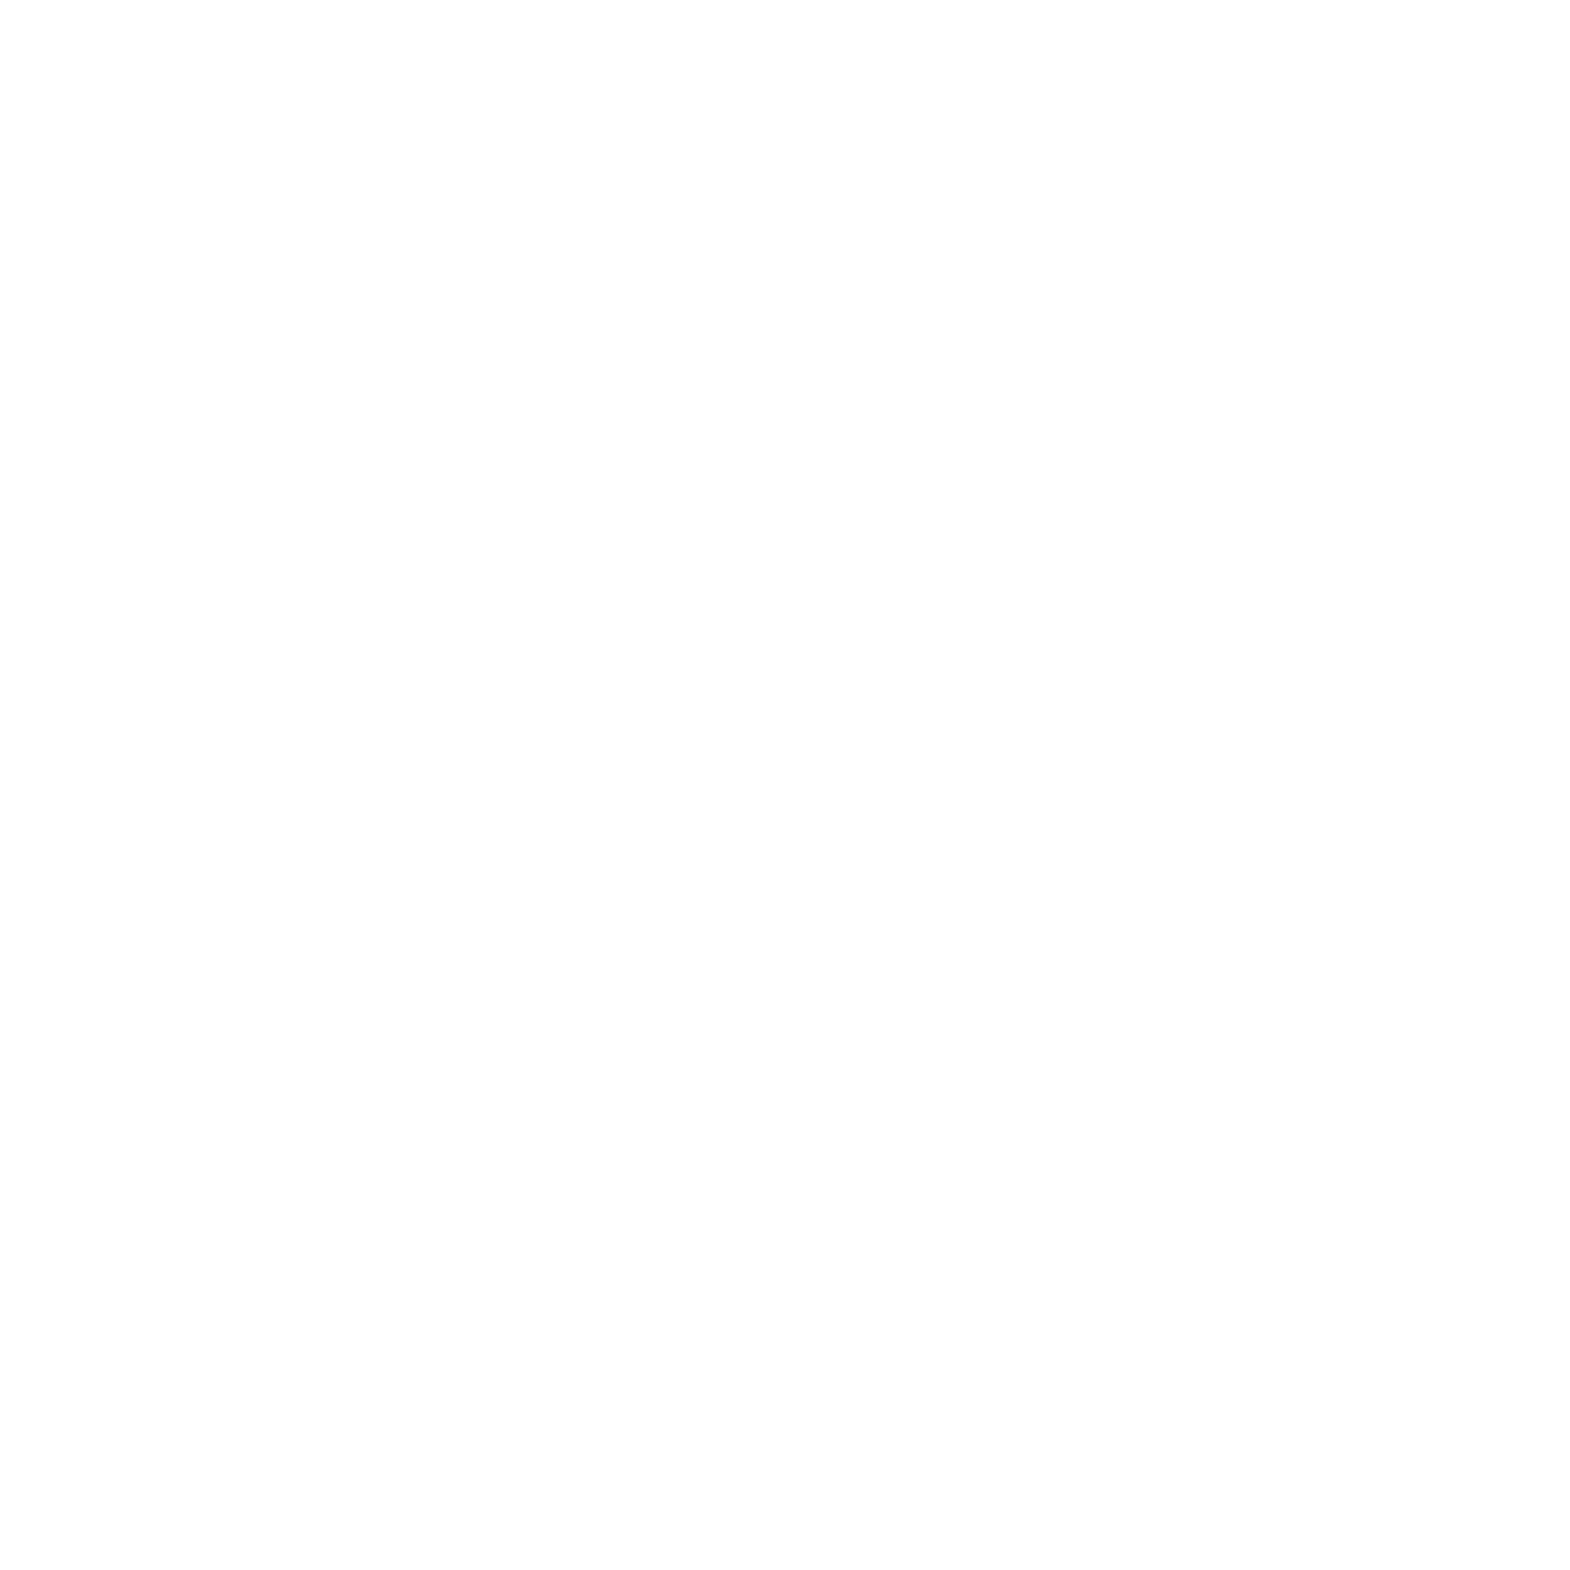 Mediaset España Comunicación logo pour fonds sombres (PNG transparent)